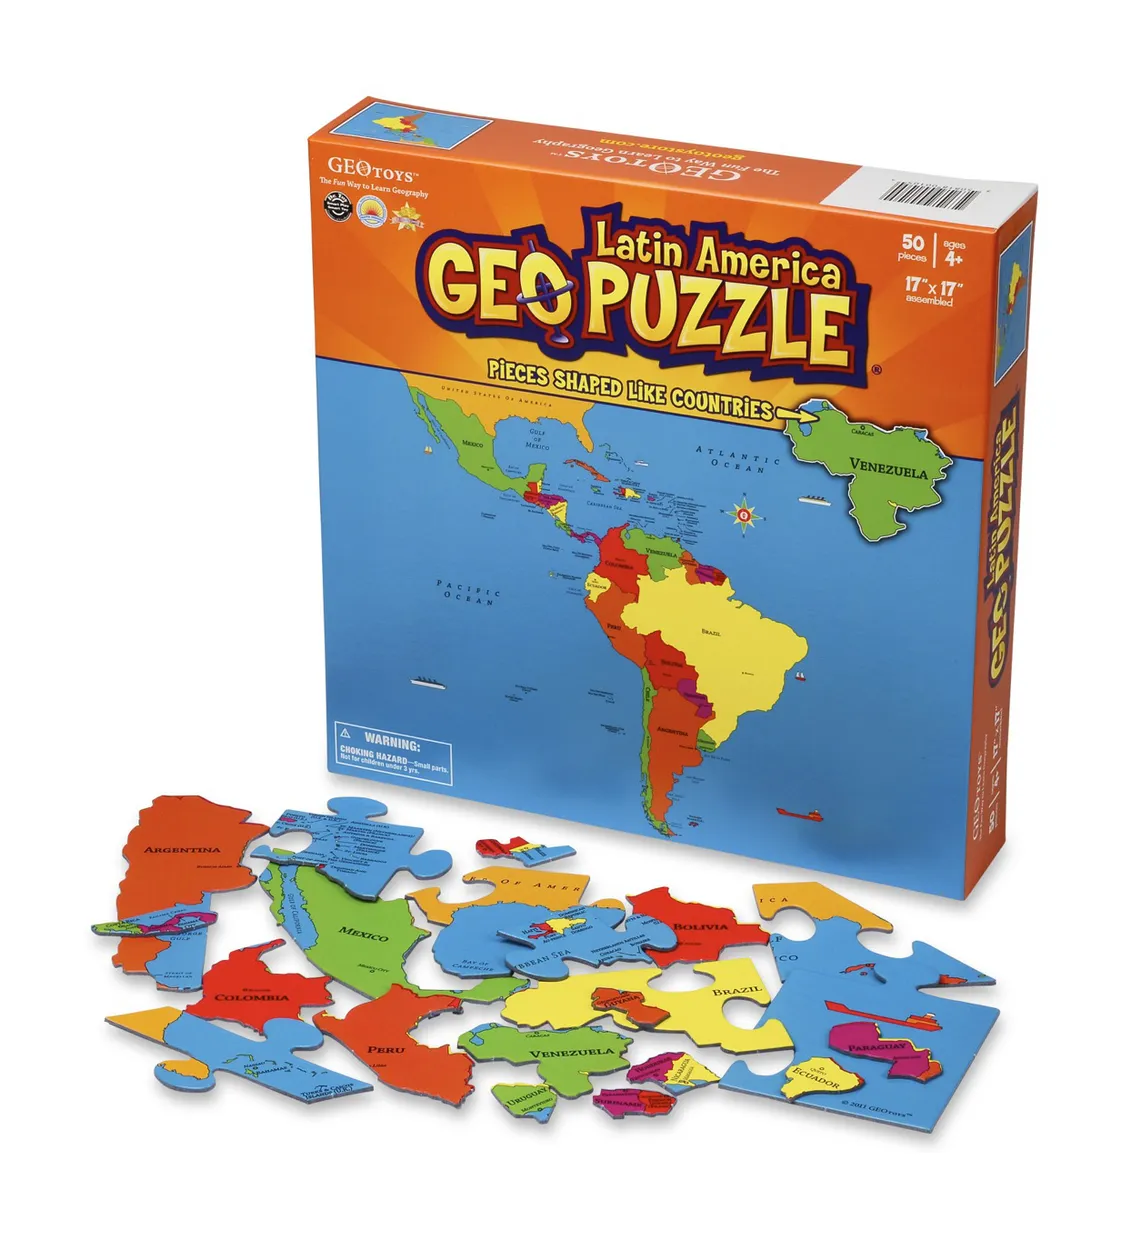 Kinderpuzzel GeoPuzzle Latin America - Latijns Amerika | GEOtoys